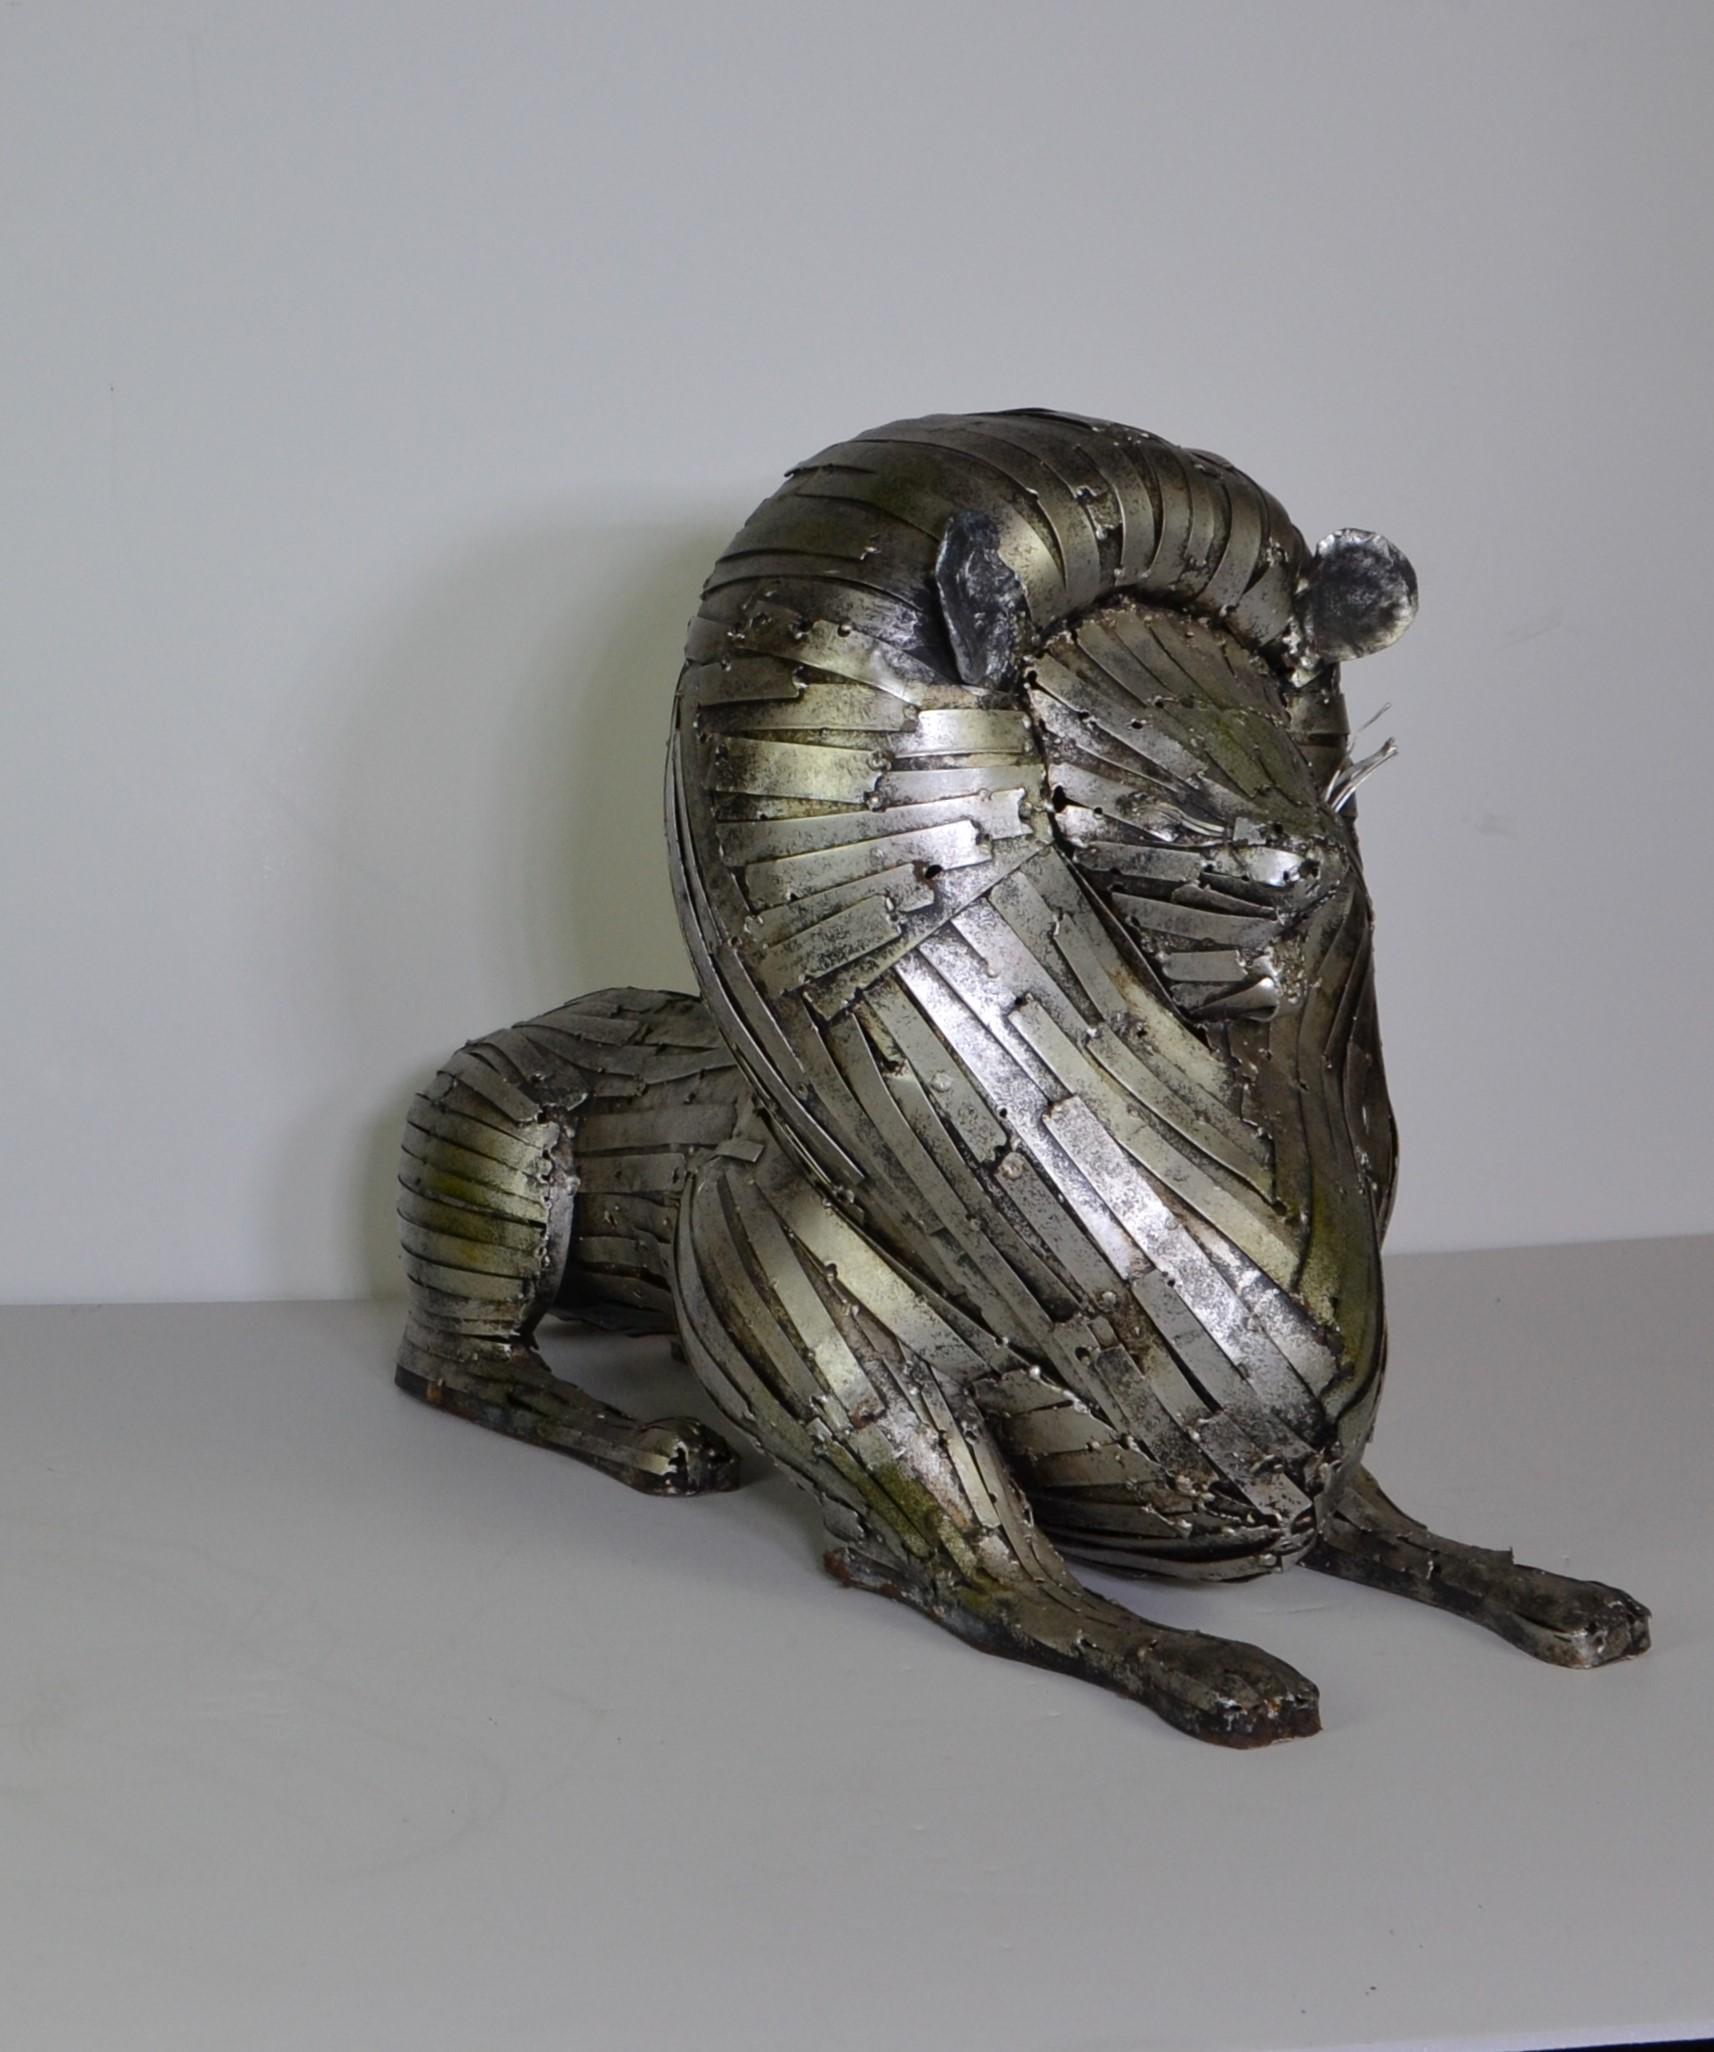 Hand made metal lion sculpture.